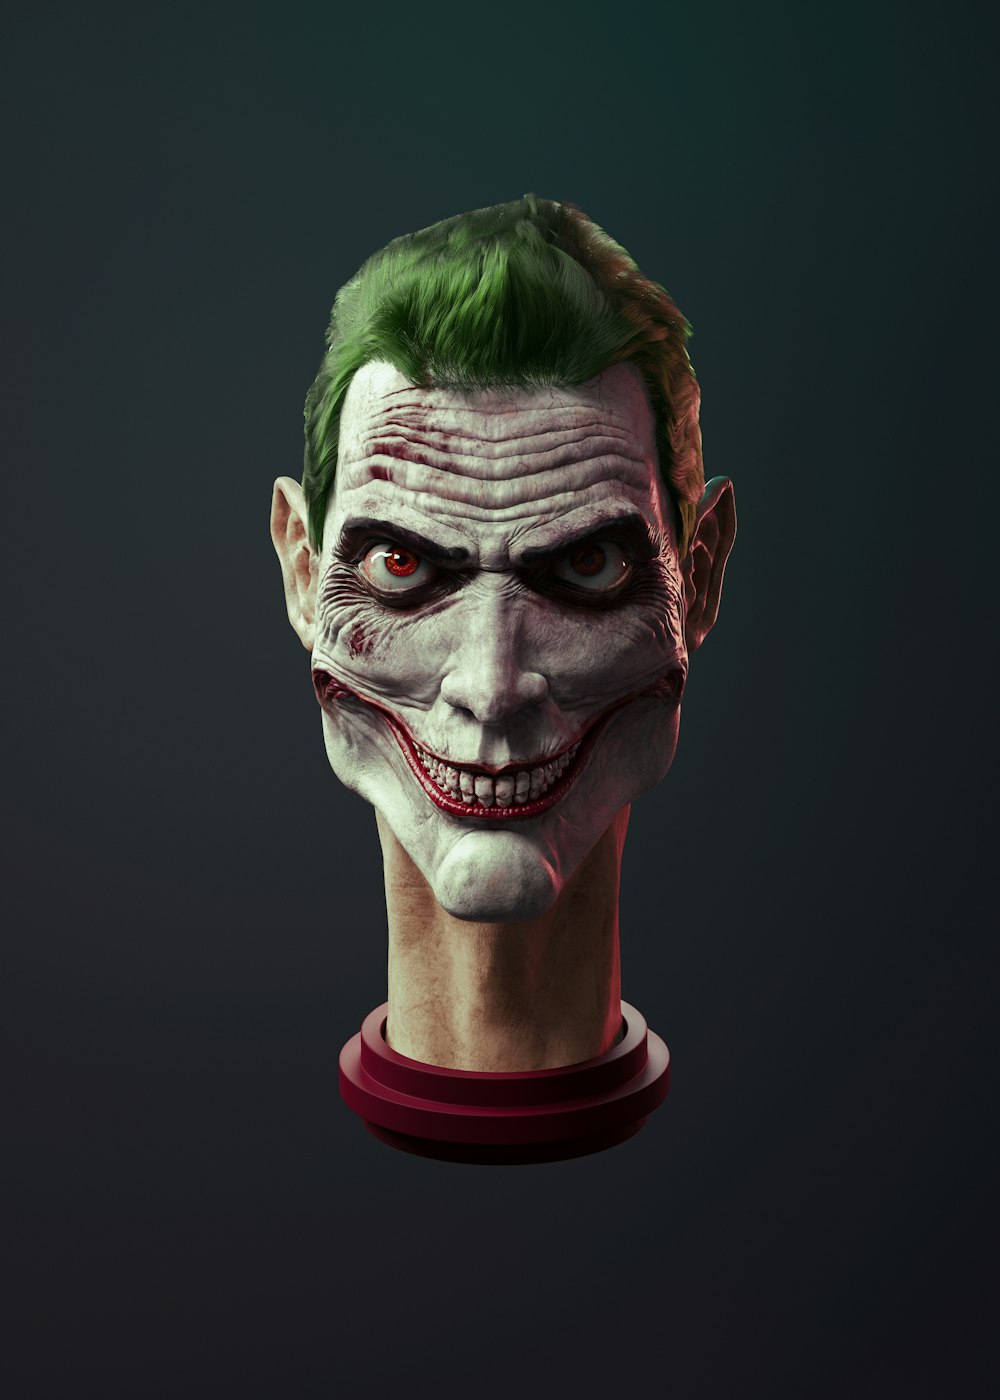 a man with green hair wearing a joker mask